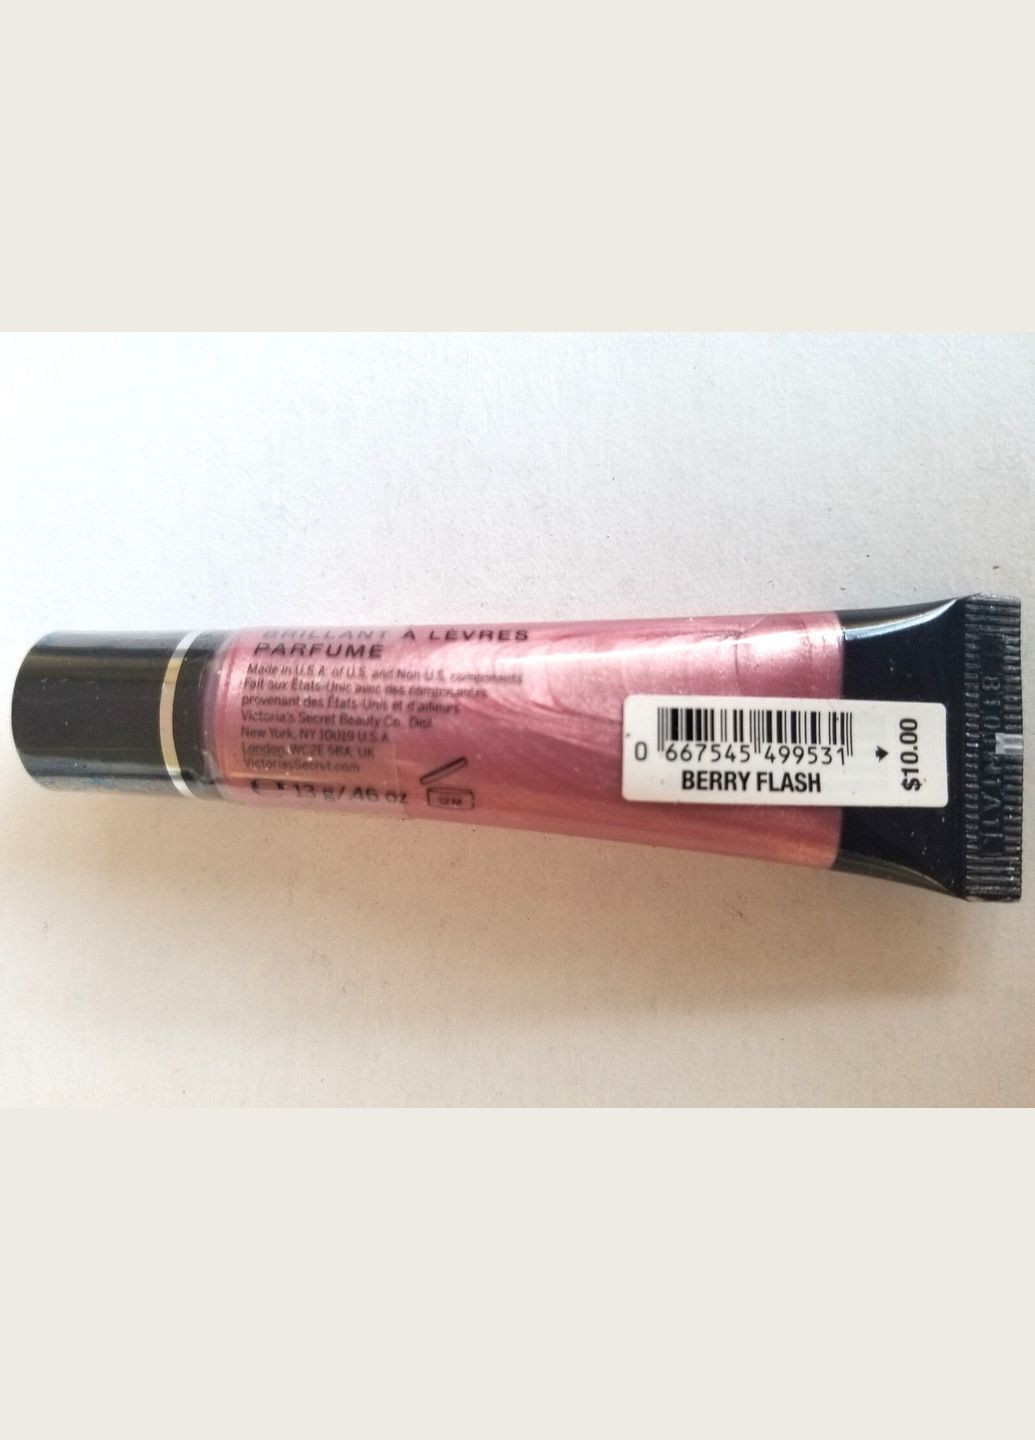 Ароматизированный блеск для губ Satin Gloss Berry Flash Lip Shine 13 г Victoria's Secret (279363893)